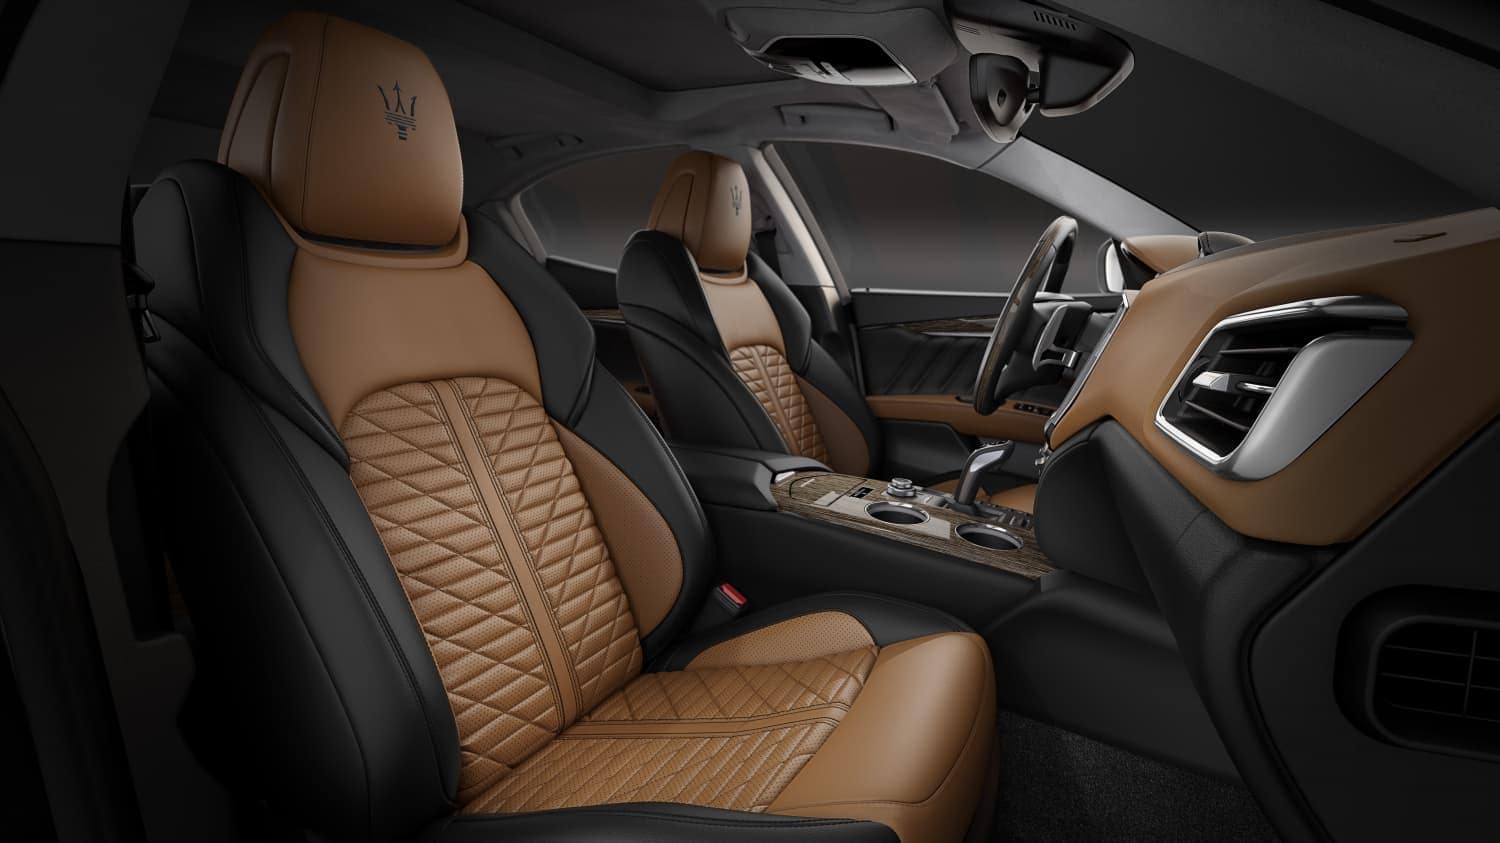 2019 Maserati Ghibli Interior | Maserati Sports Sedan Design